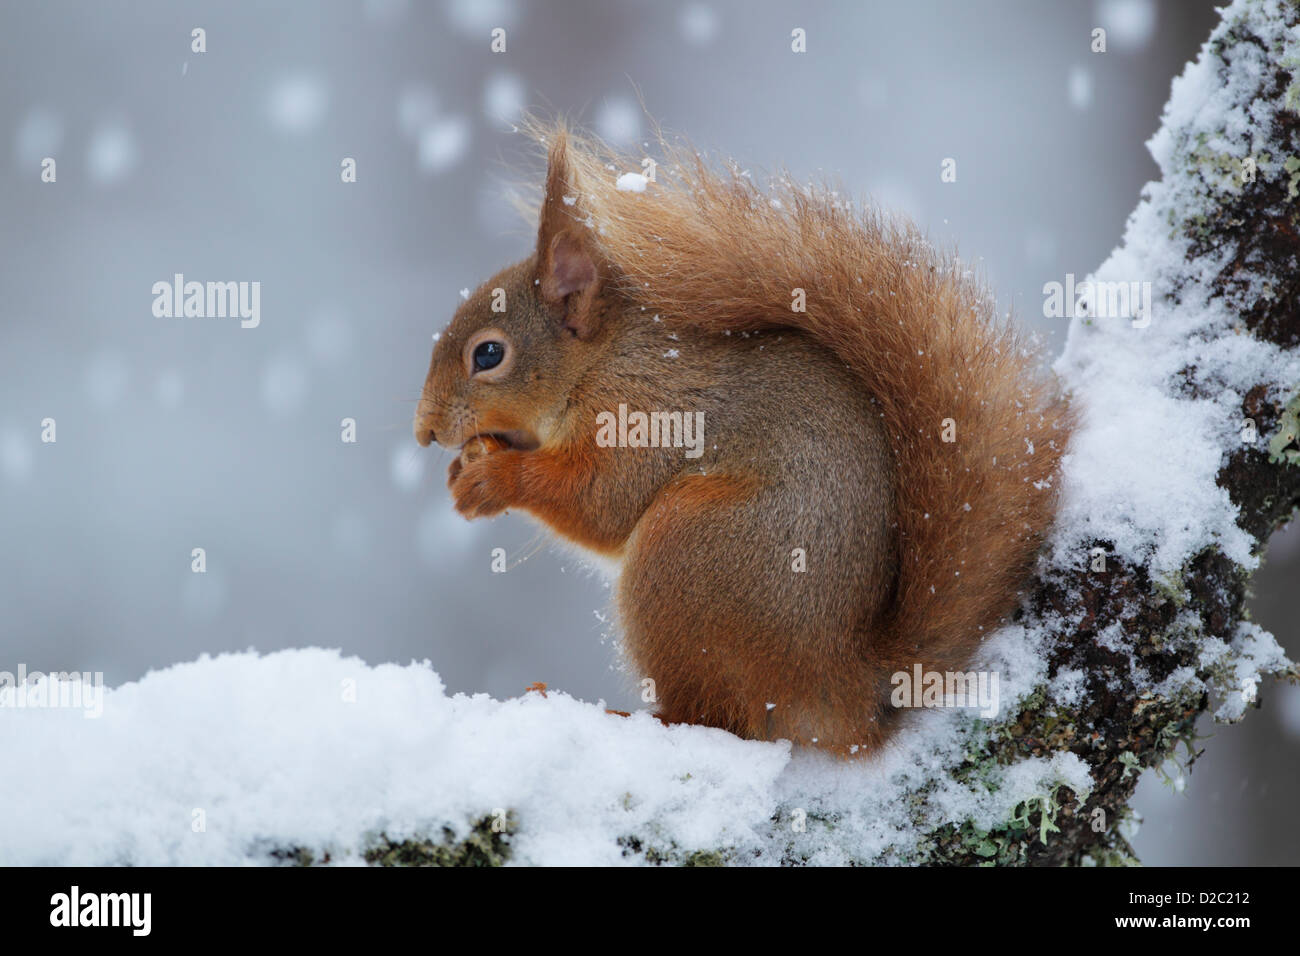 Ardilla roja (Sciurus vulgaris) se sentó sobre una rama cubierto de nieve mientras come Foto de stock